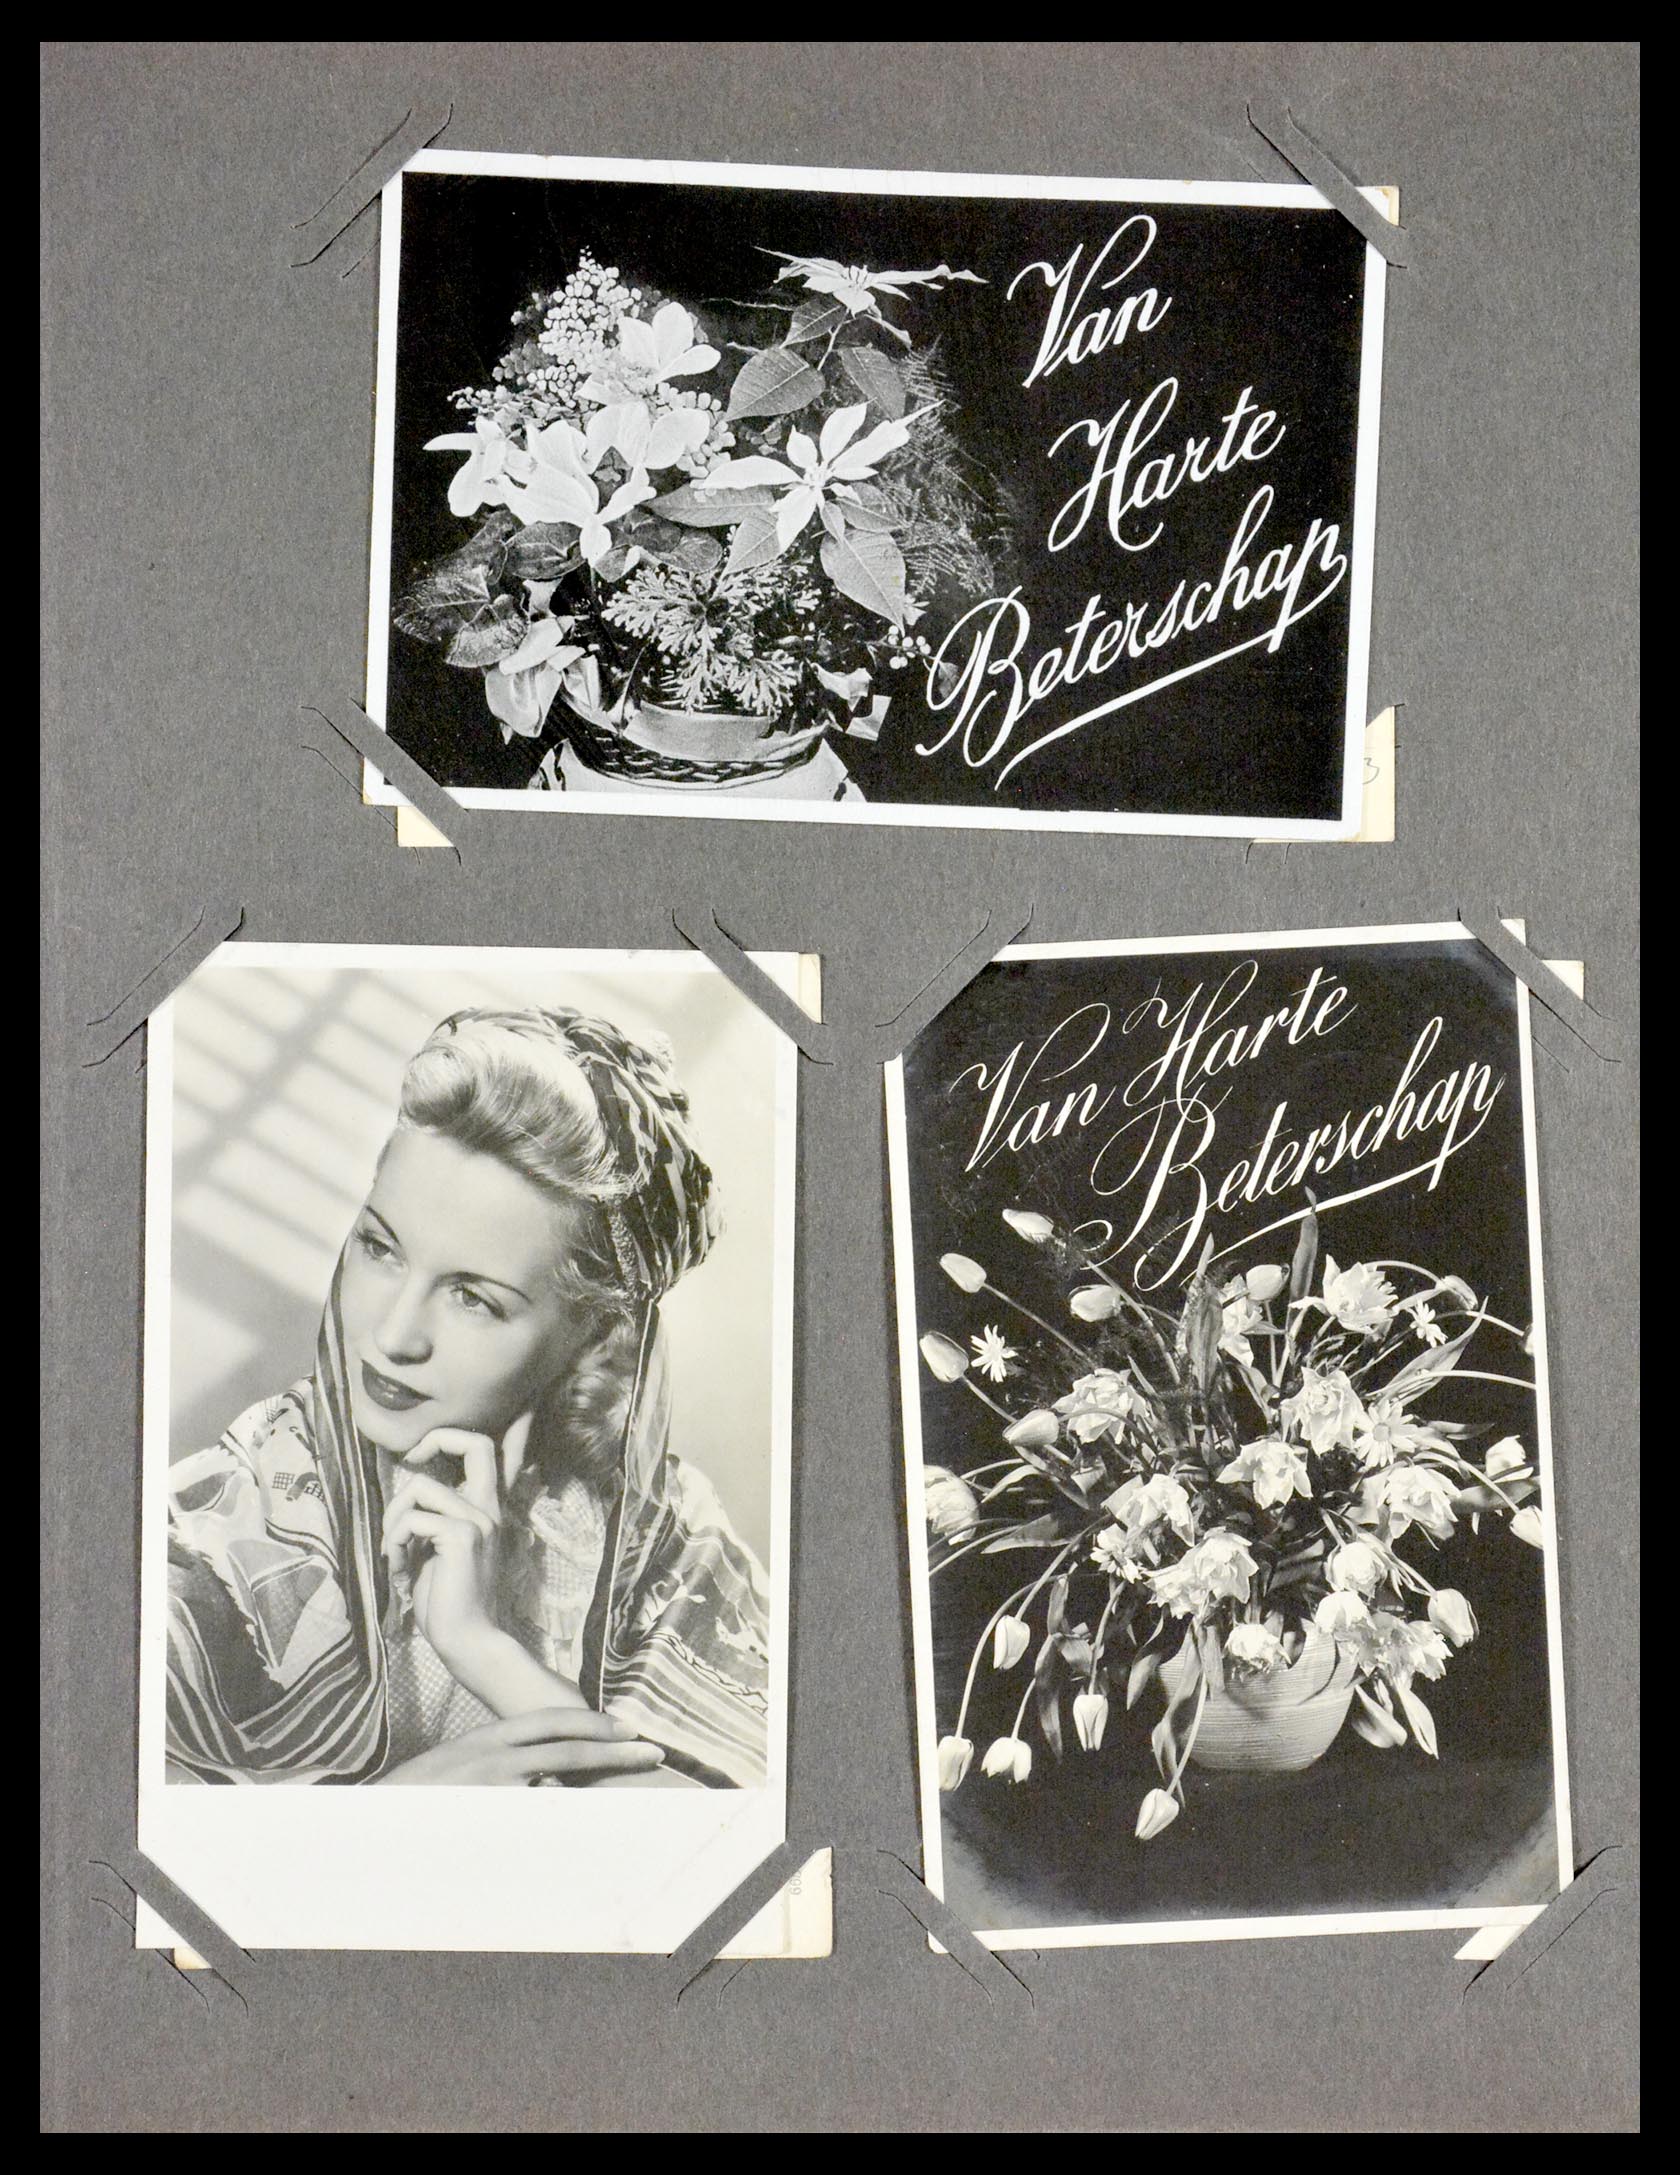 29518 040 - 29518 Nederland ansichtkaarten 1939-1940.